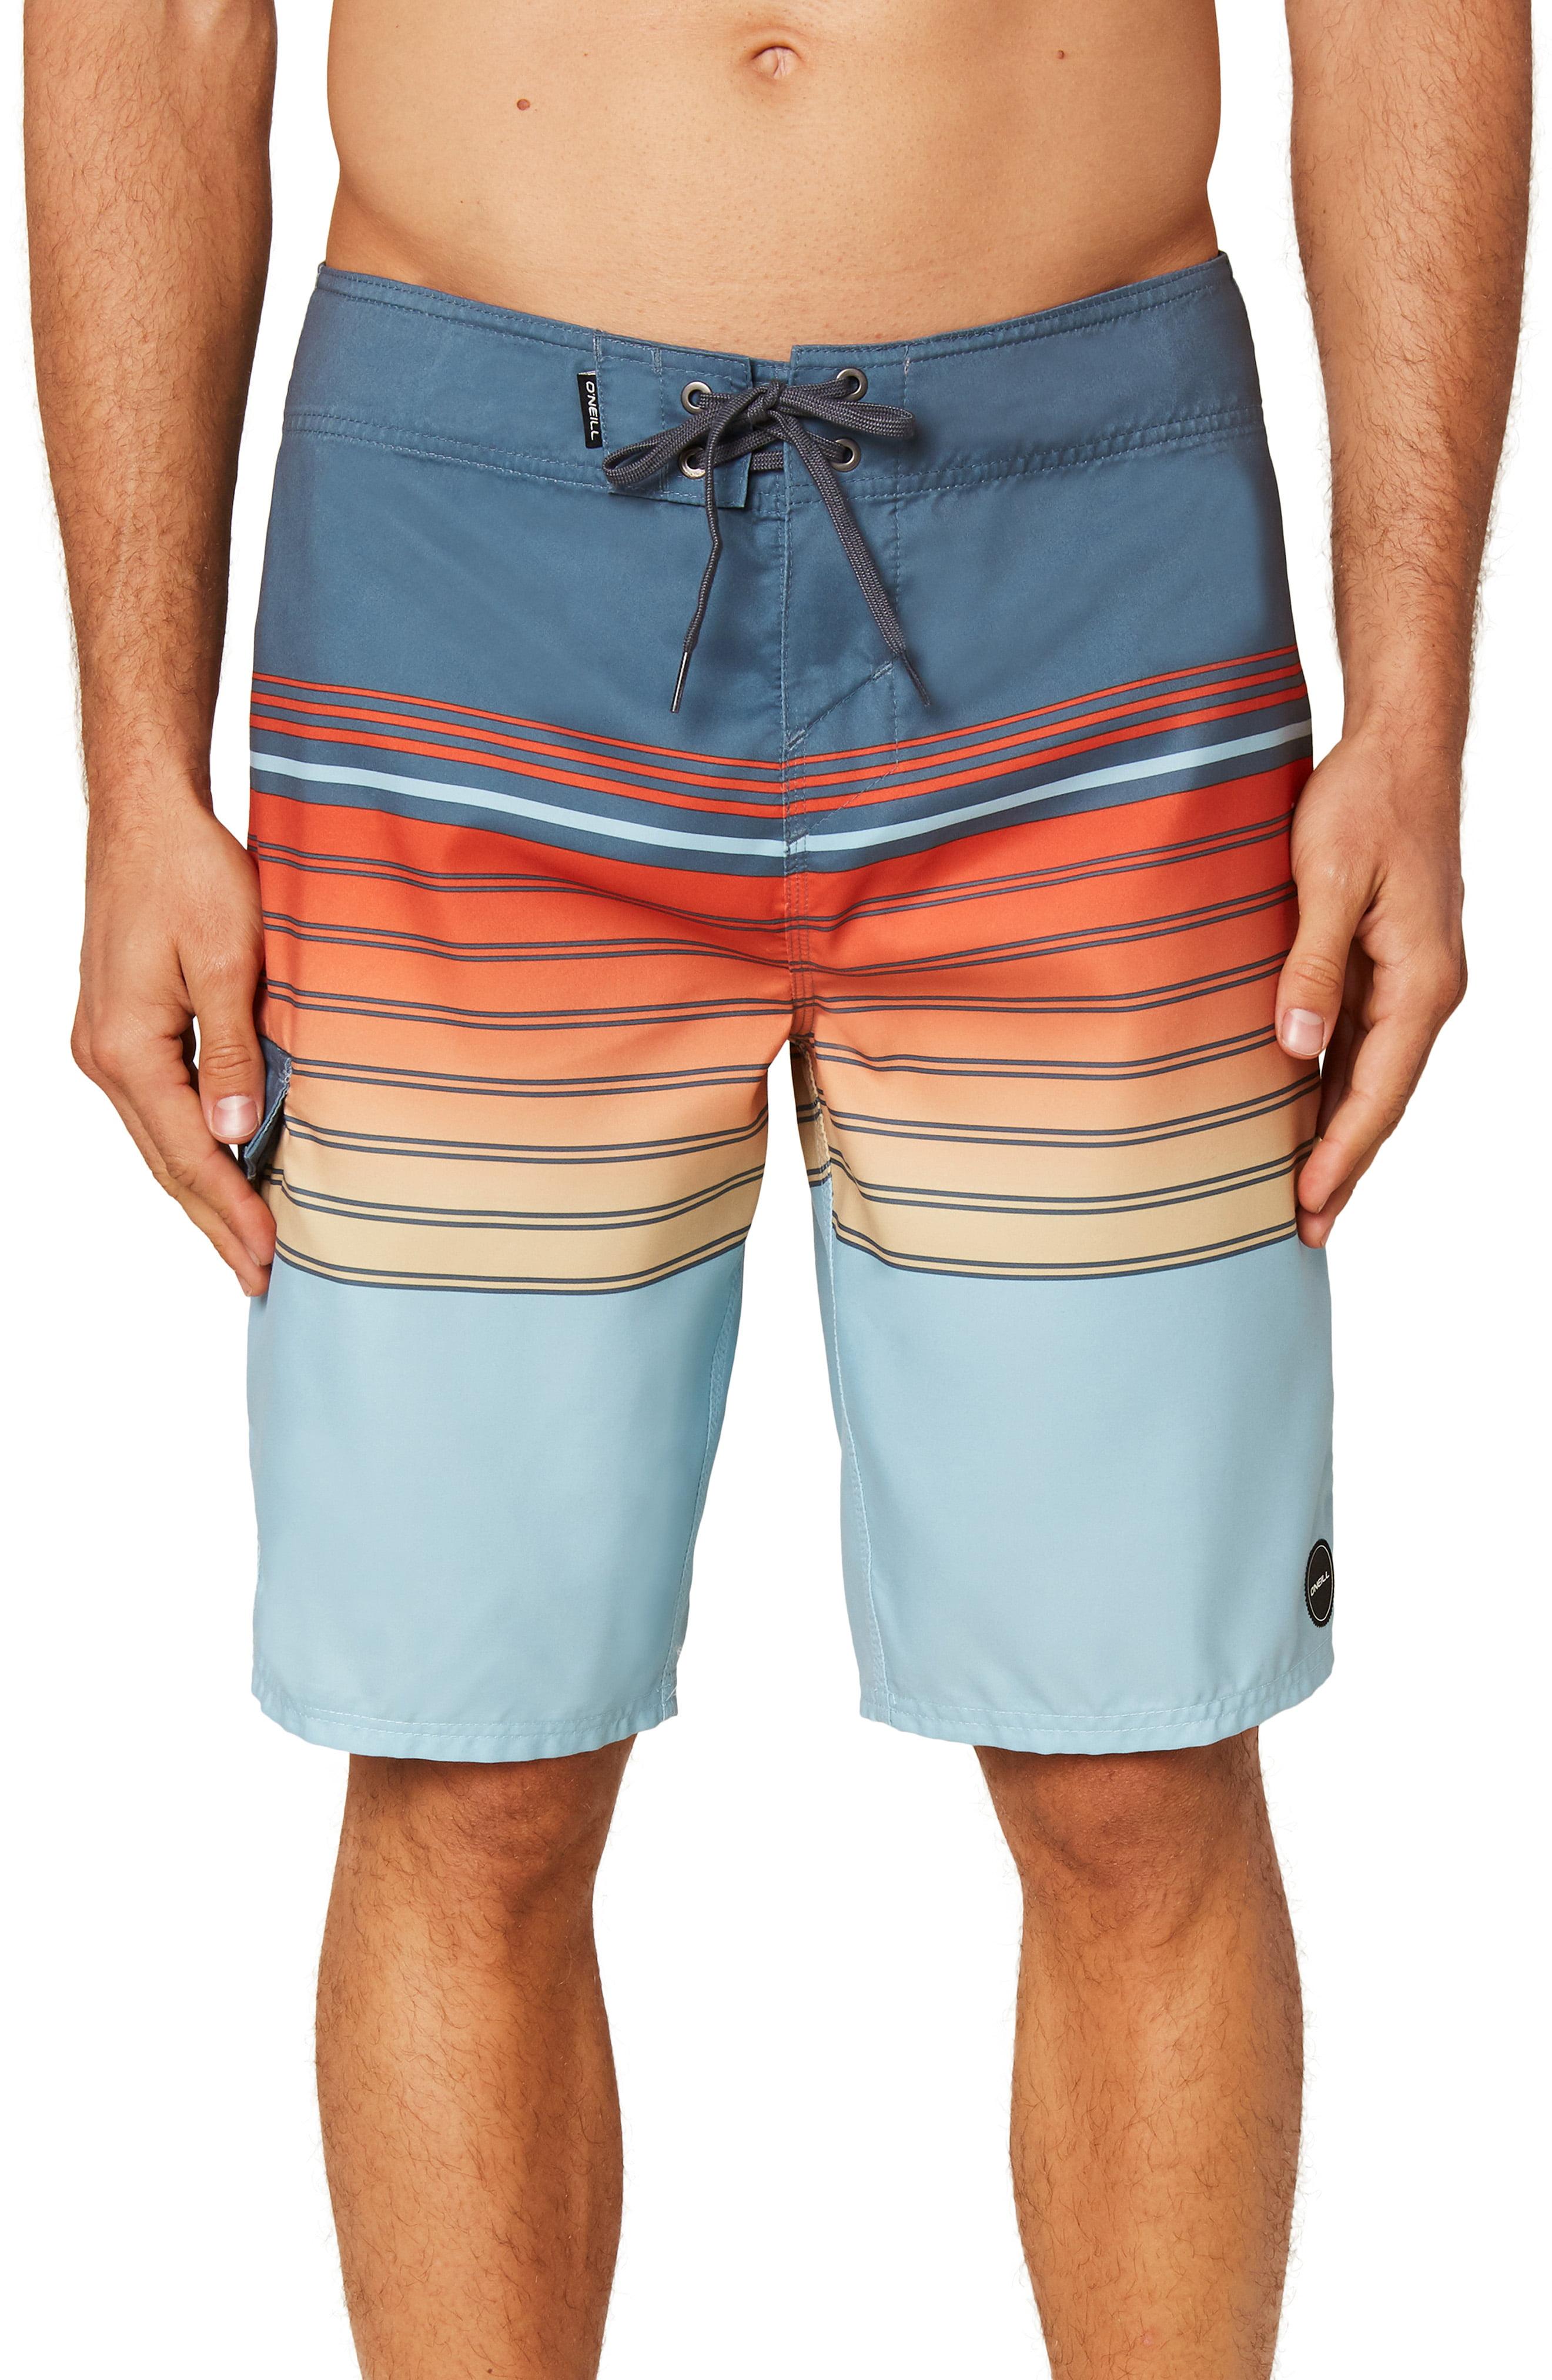 O'neill Sportswear Lennox Board Shorts in Slate (Blue) for Men - Lyst